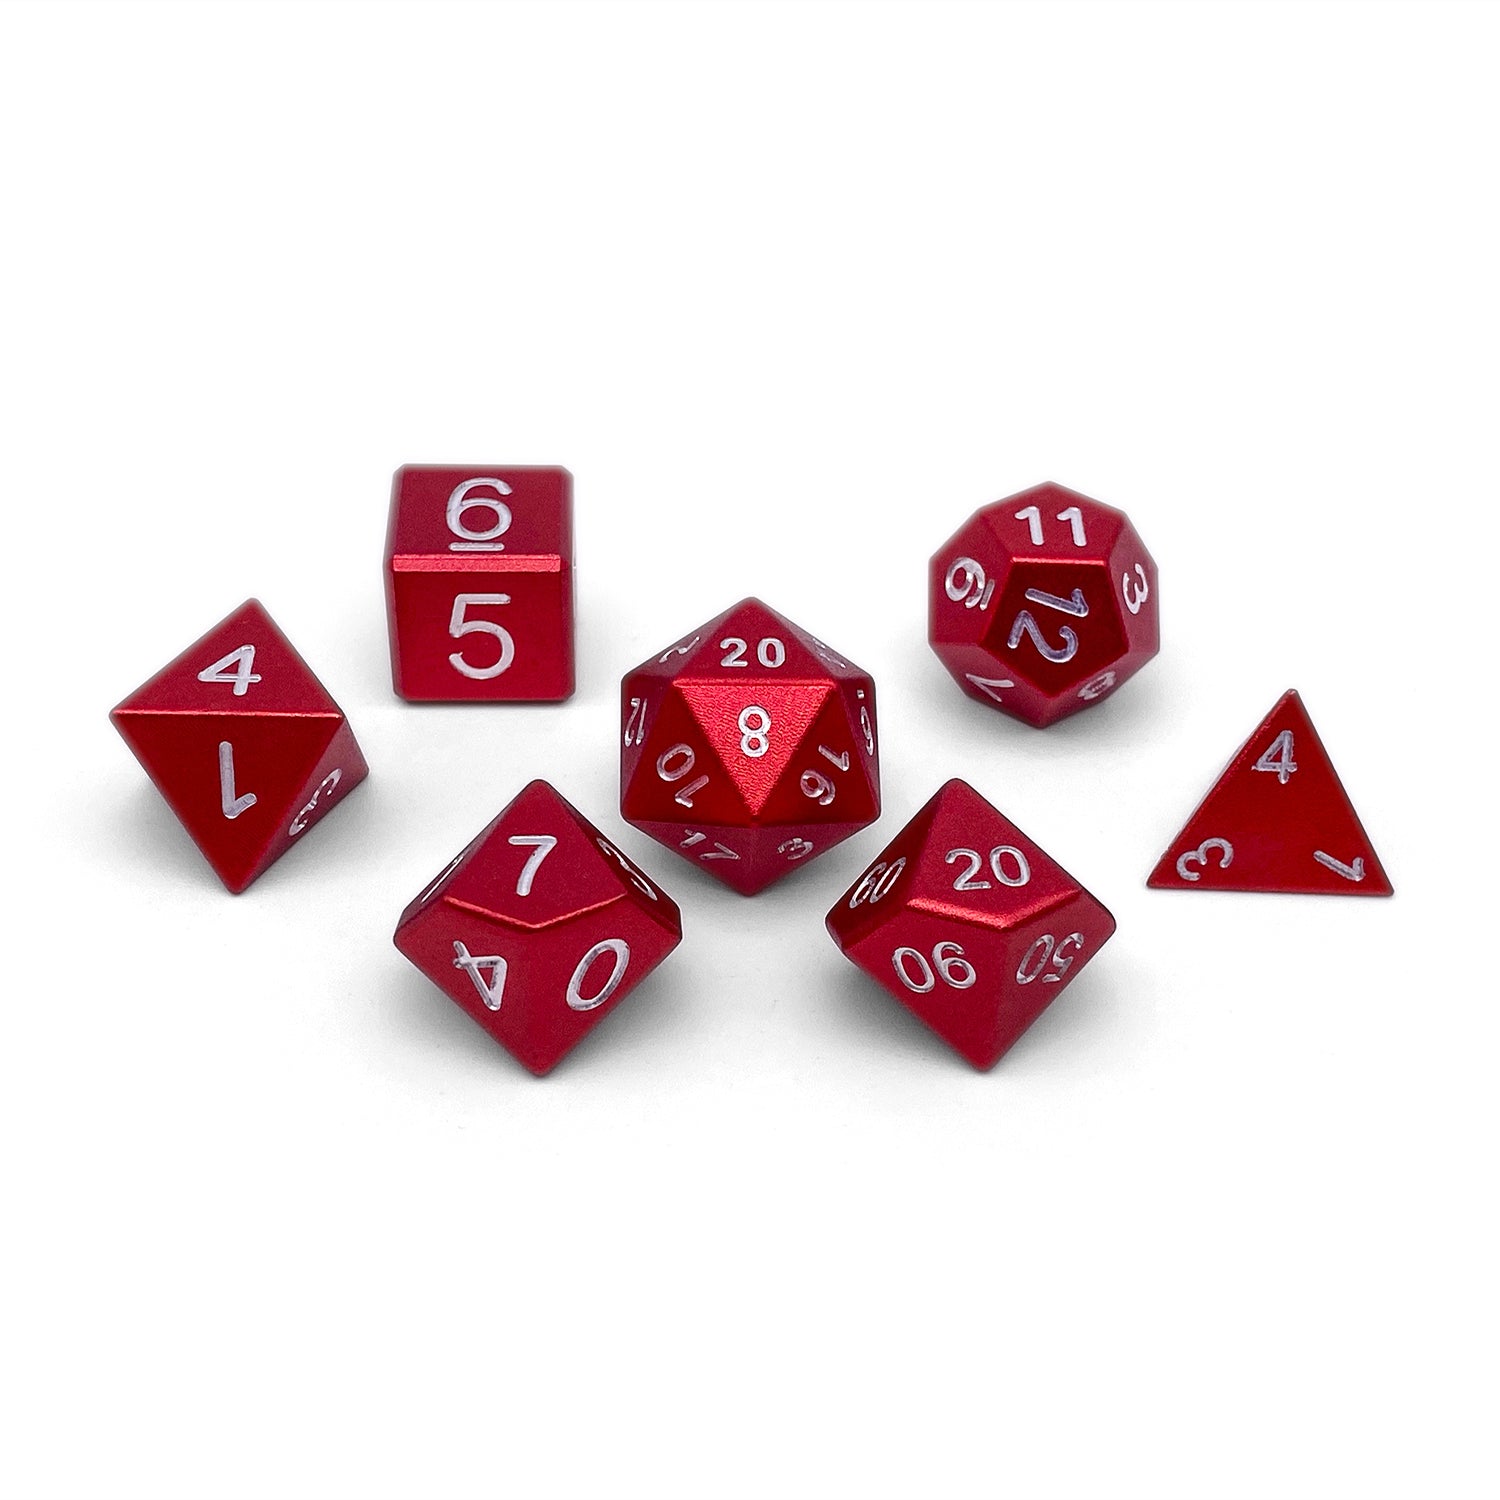 Devils Red - 7 Piece RPG Set 6063 Aluminum Dice